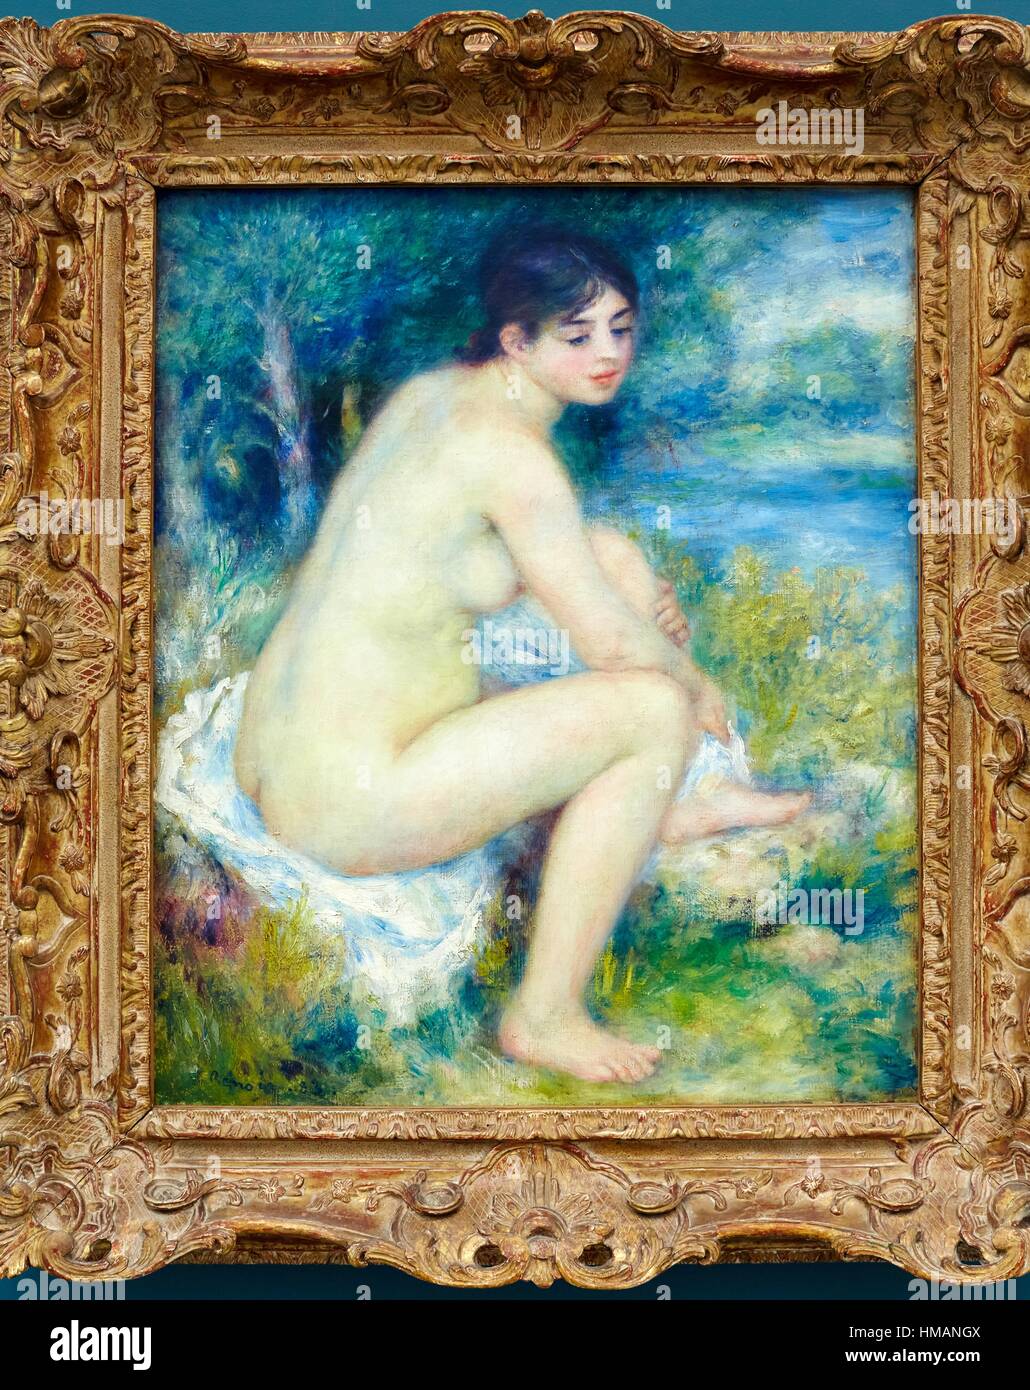 Femme nue dans un paysage, Pierre-Auguste Renoir, Musée de l'Orangerie, jardin des Tuileries, Paris, France Banque D'Images